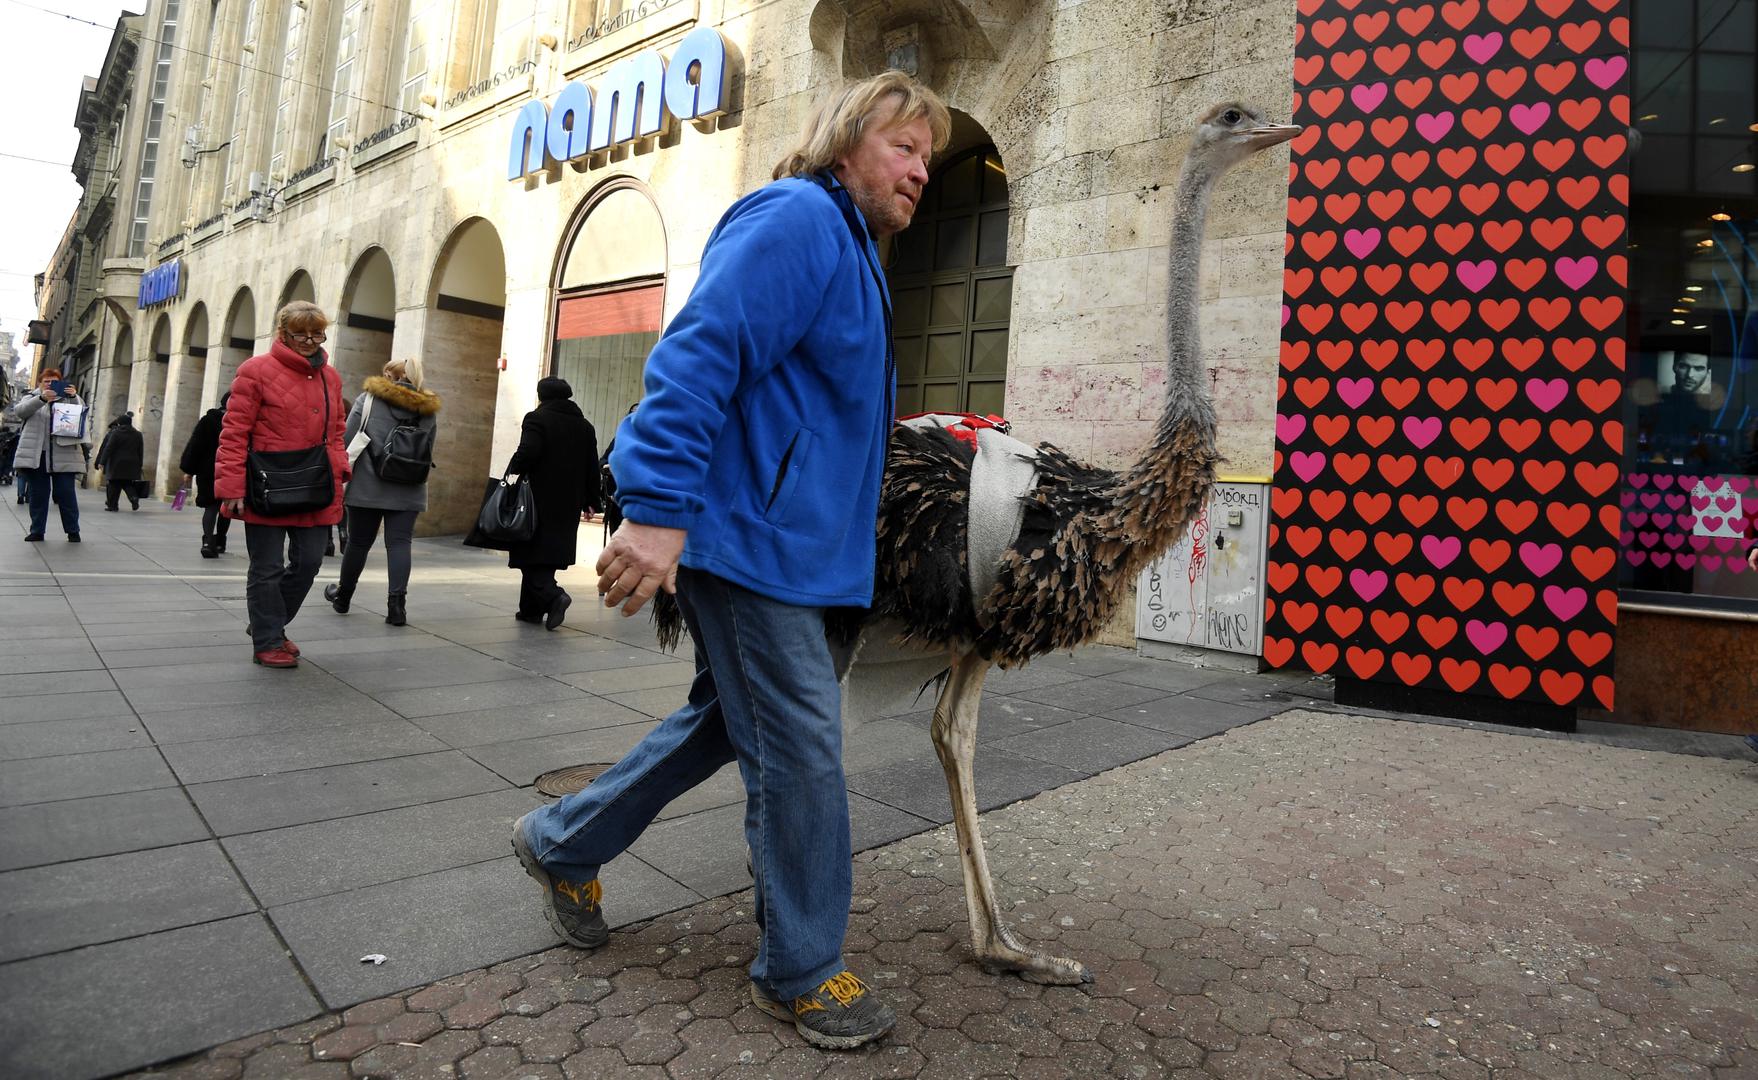 Glavna atrakcija u Zagrebu danas je bio noj Francelj iz Ljubljane koji ima dozvolu za šetnju gradom uz pratnju vlasnika koji ga vodi na lajni.